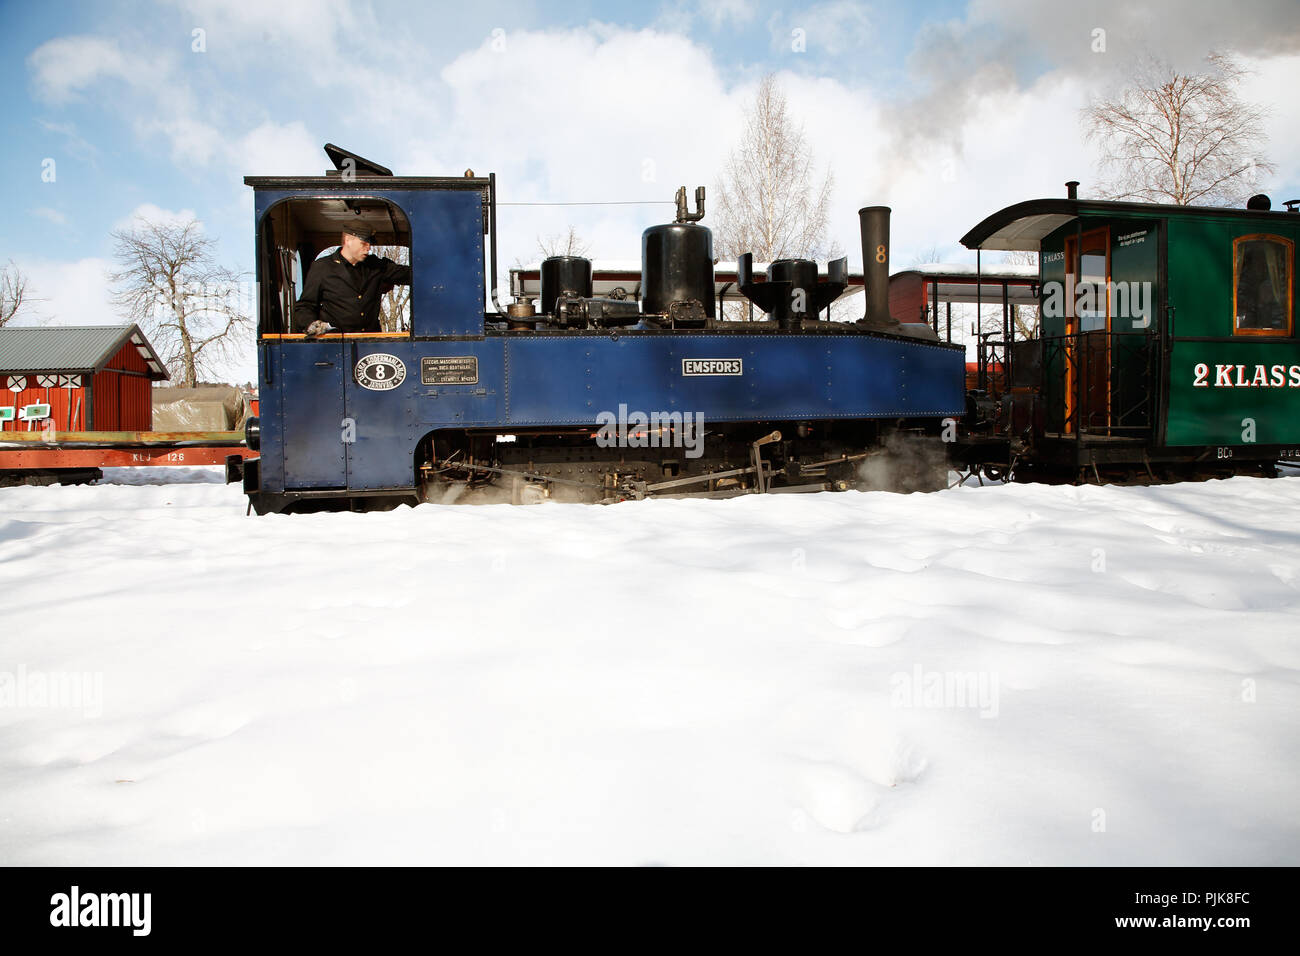 Mariefred, Suède - 19 mars 2006 : locomotive à vapeur no 8 Emsfors couplé au train de voyageurs à l'Ostra Sodermanland Railway museum. Banque D'Images